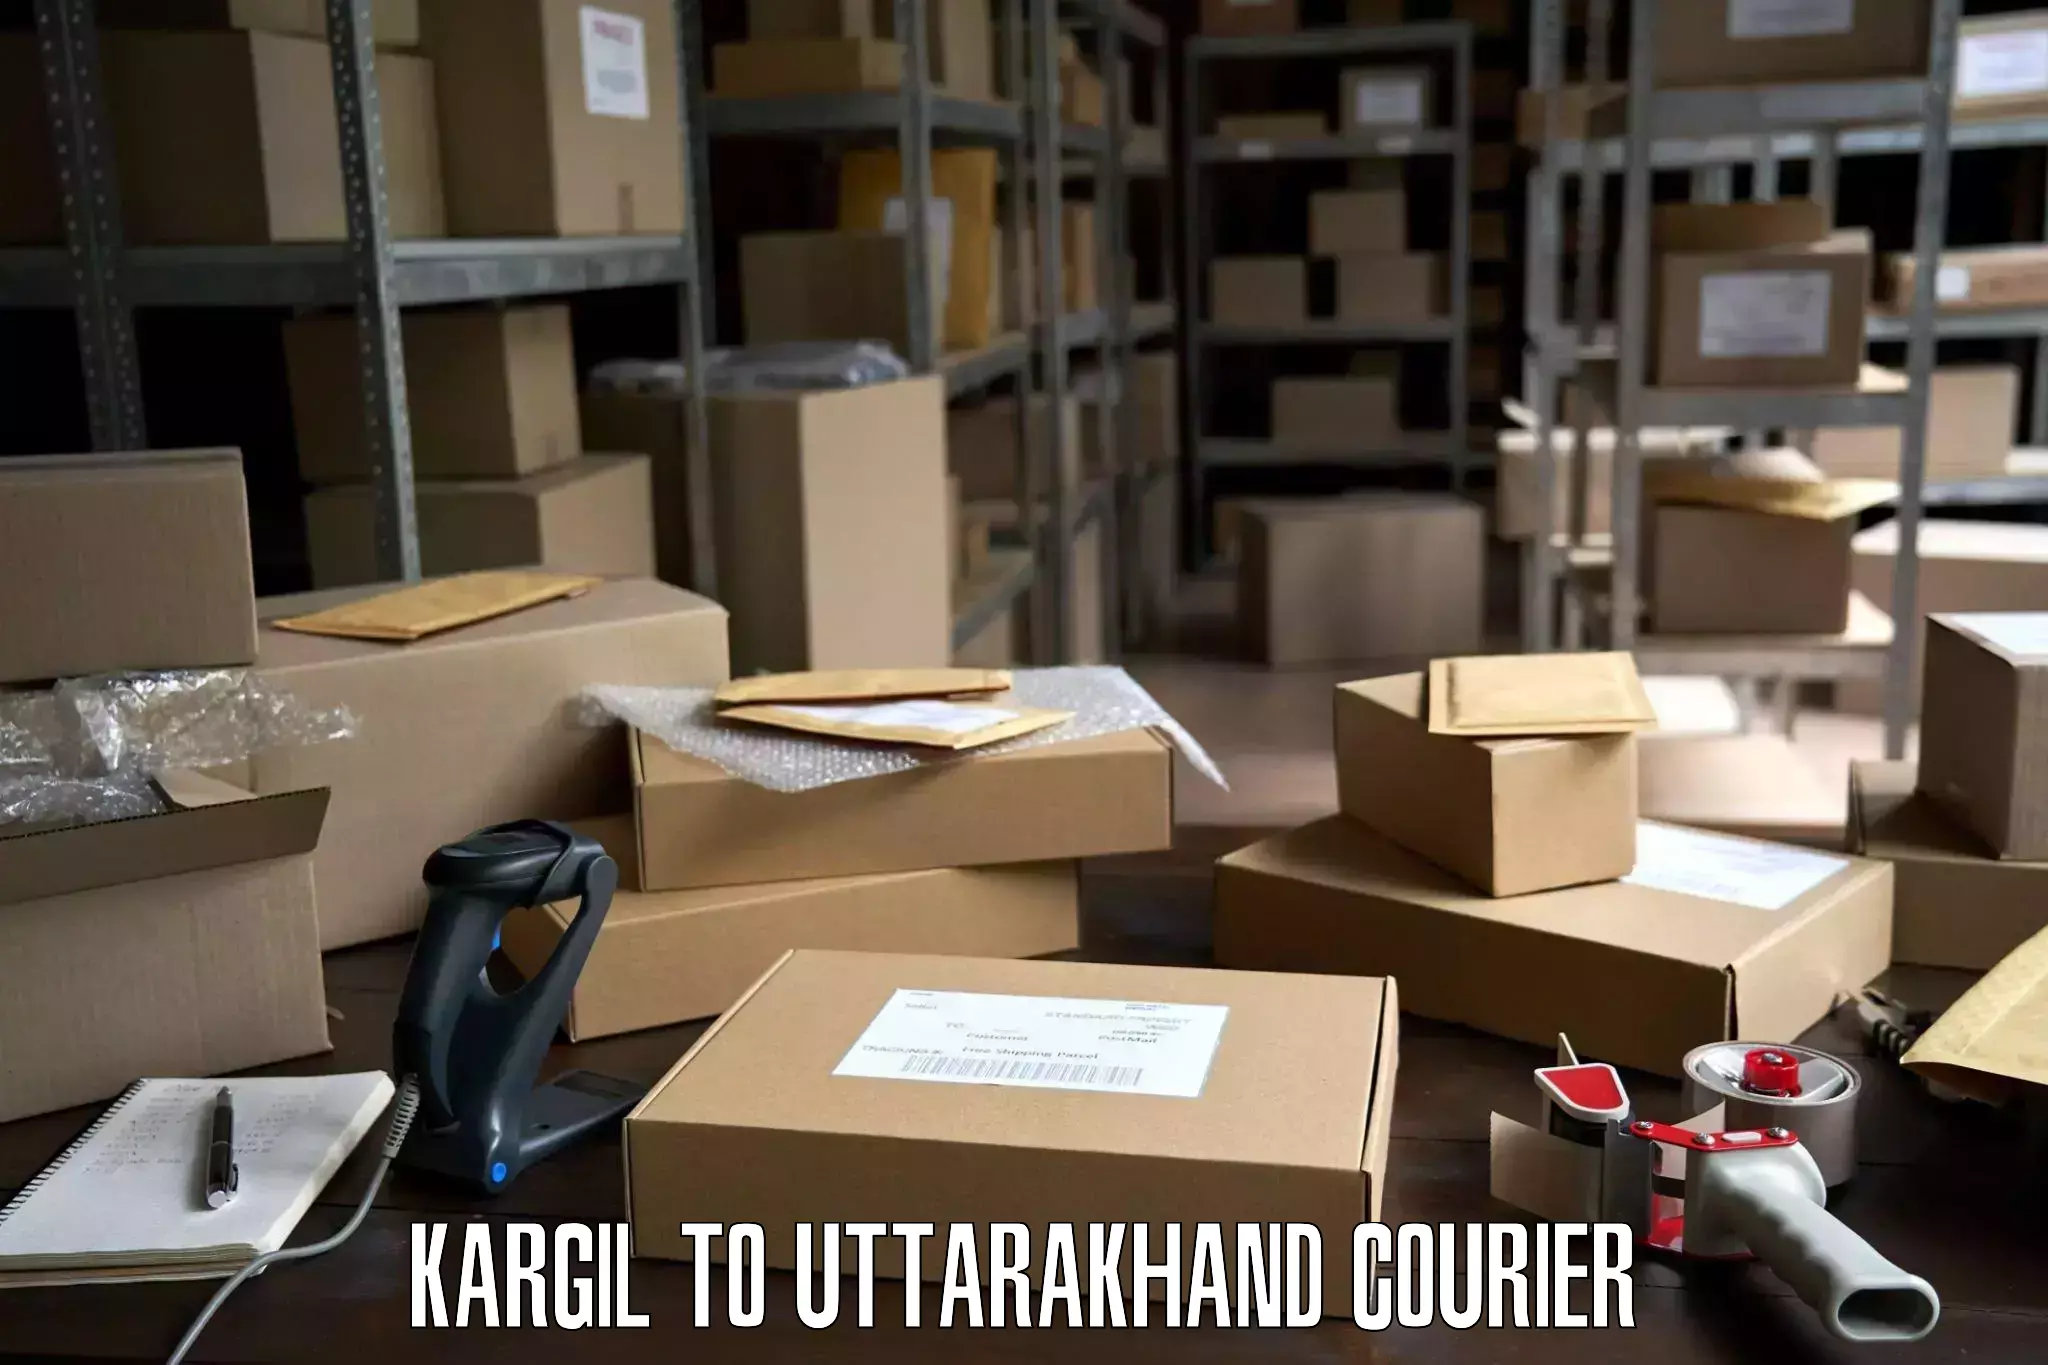 Professional moving company Kargil to Nainital